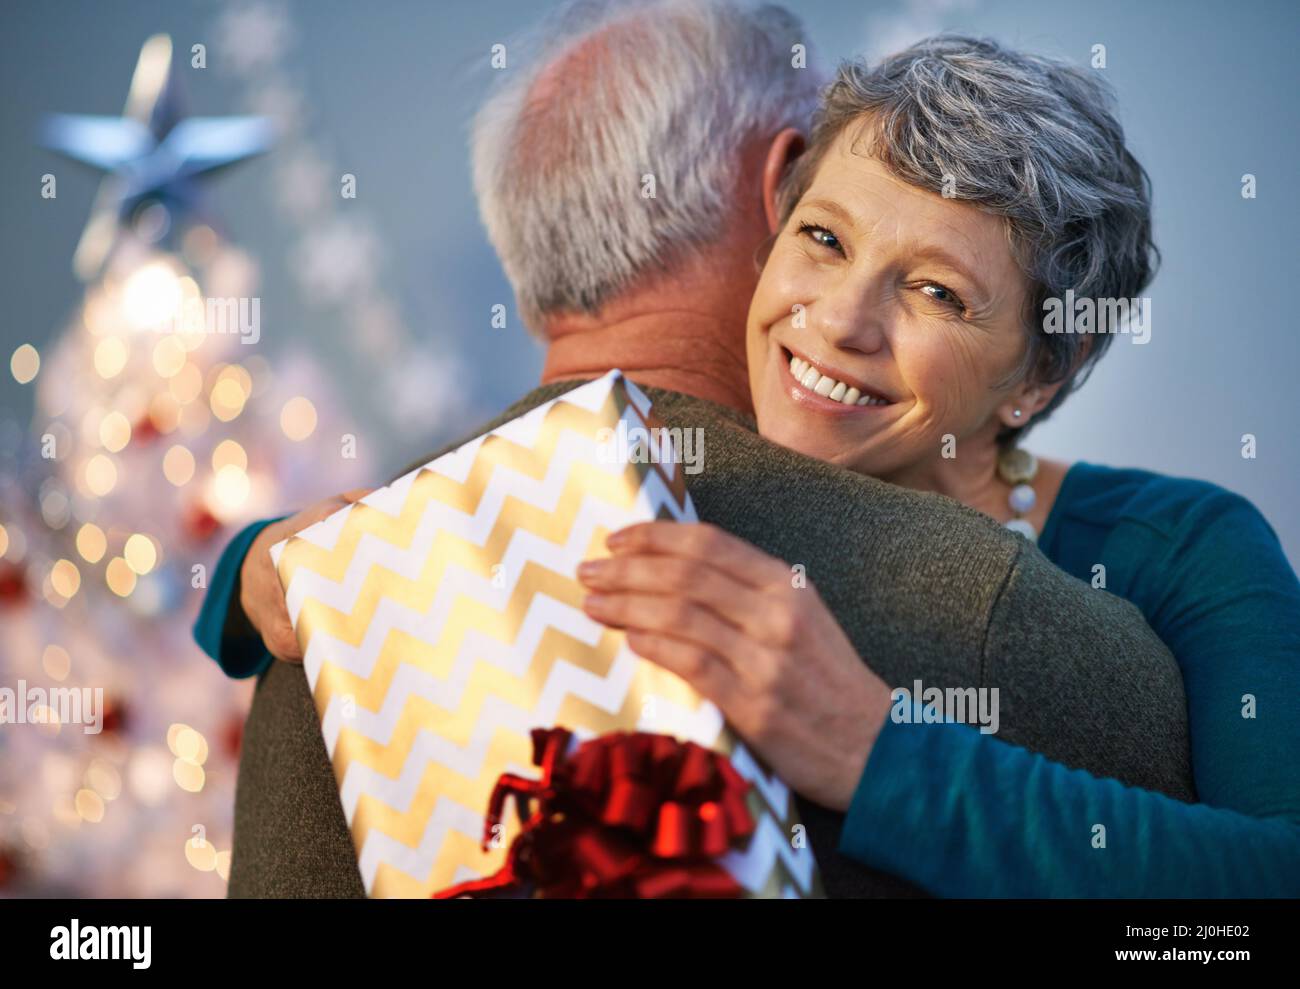 Weihnachtsumarmungen sind ihr eigenes Geschenk. Aufnahme einer reifen Frau, die ihren Partner umarmt, um ihm für ihr Geschenk zu danken. Stockfoto